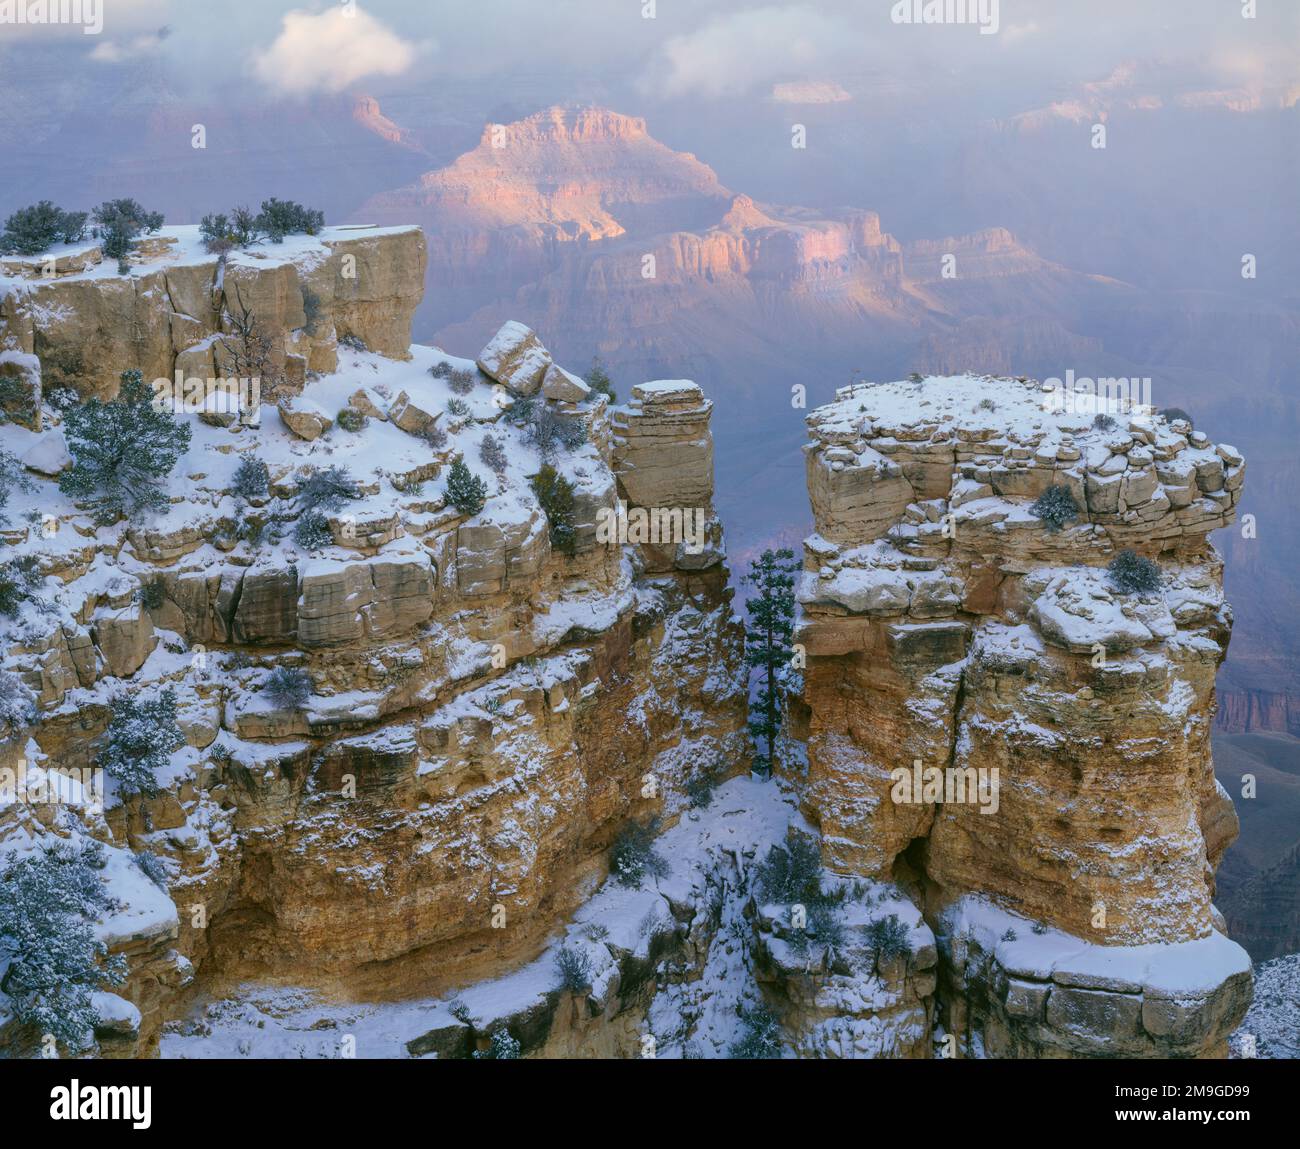 Paysage avec des formations rocheuses couvertes de neige en hiver, Moran point, South Rim, parc national du Grand Canyon, Arizona, États-Unis Banque D'Images